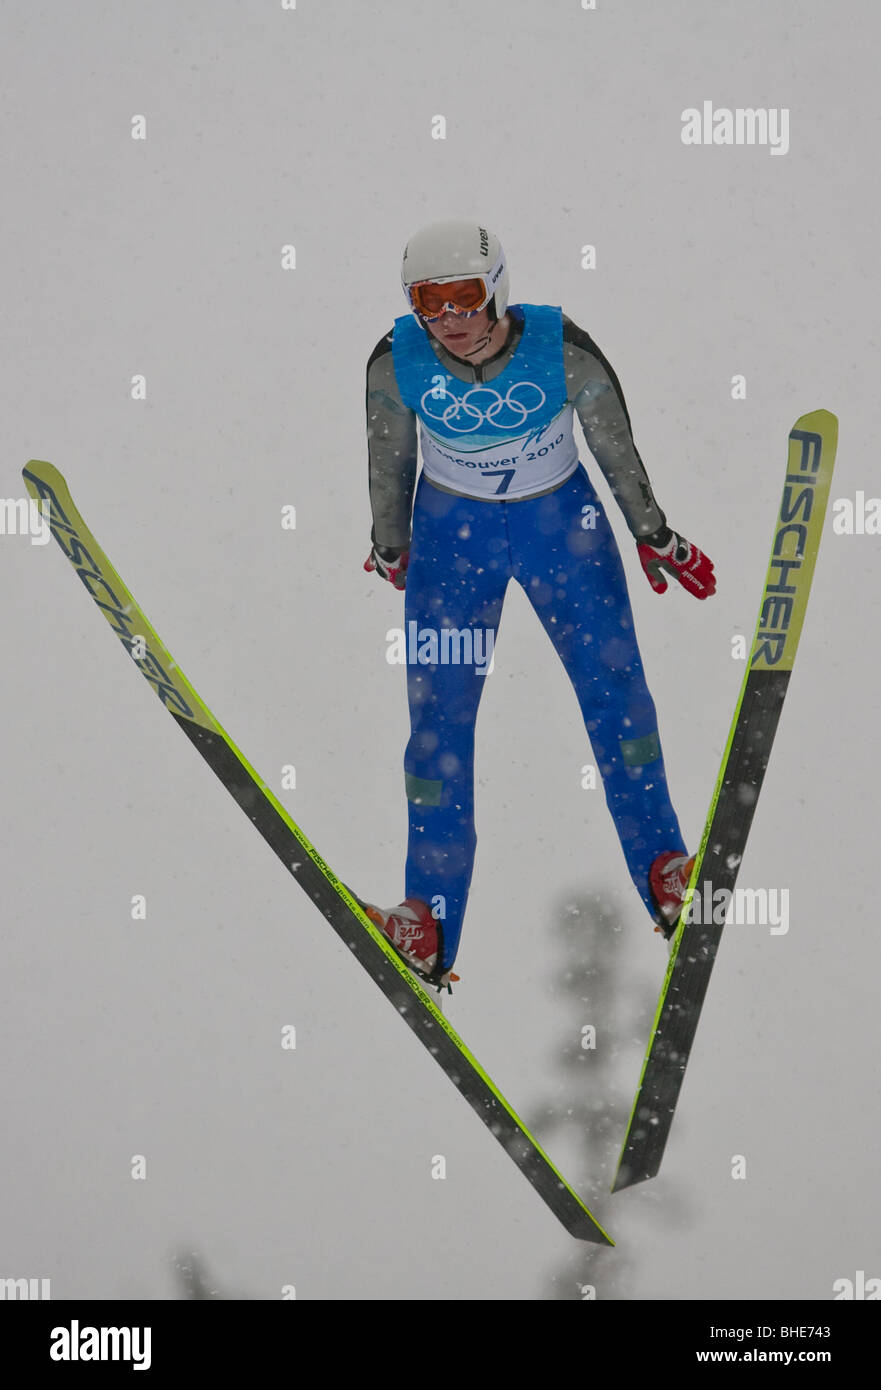 Peter Frenette (Estados Unidos) durante el NH individuales de formación de salto de esquí en los Juegos Olímpicos de Invierno de 2010, en Vancouver, Columbia Británica. Foto de stock